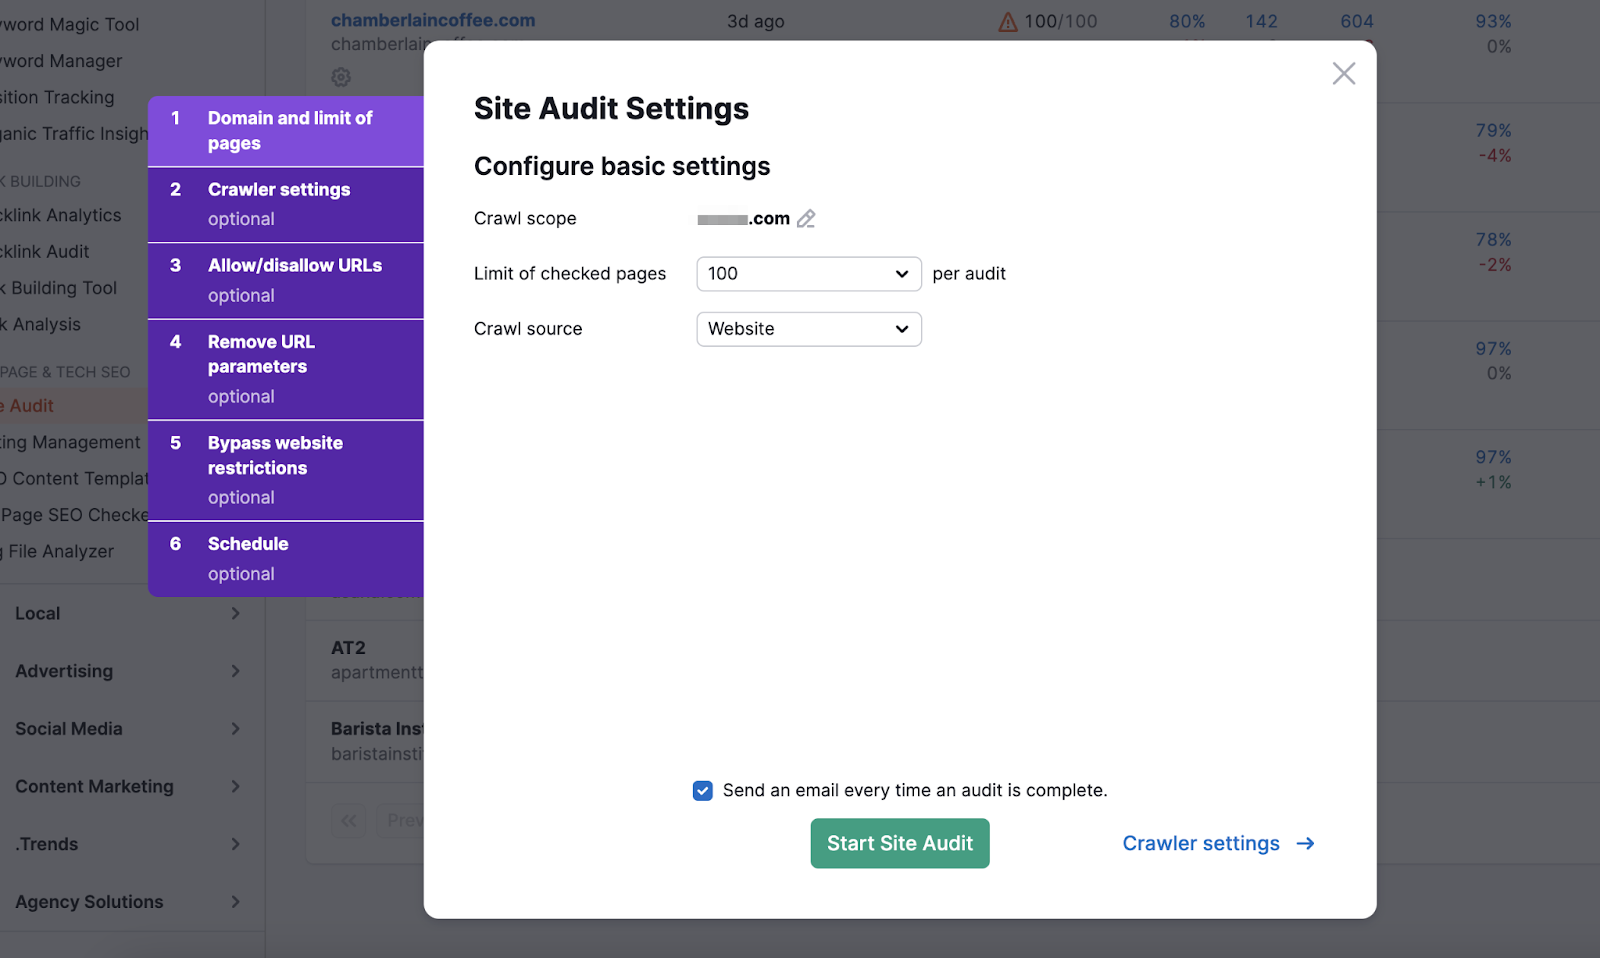 "Site Audit Settings" window in Site Audit tool